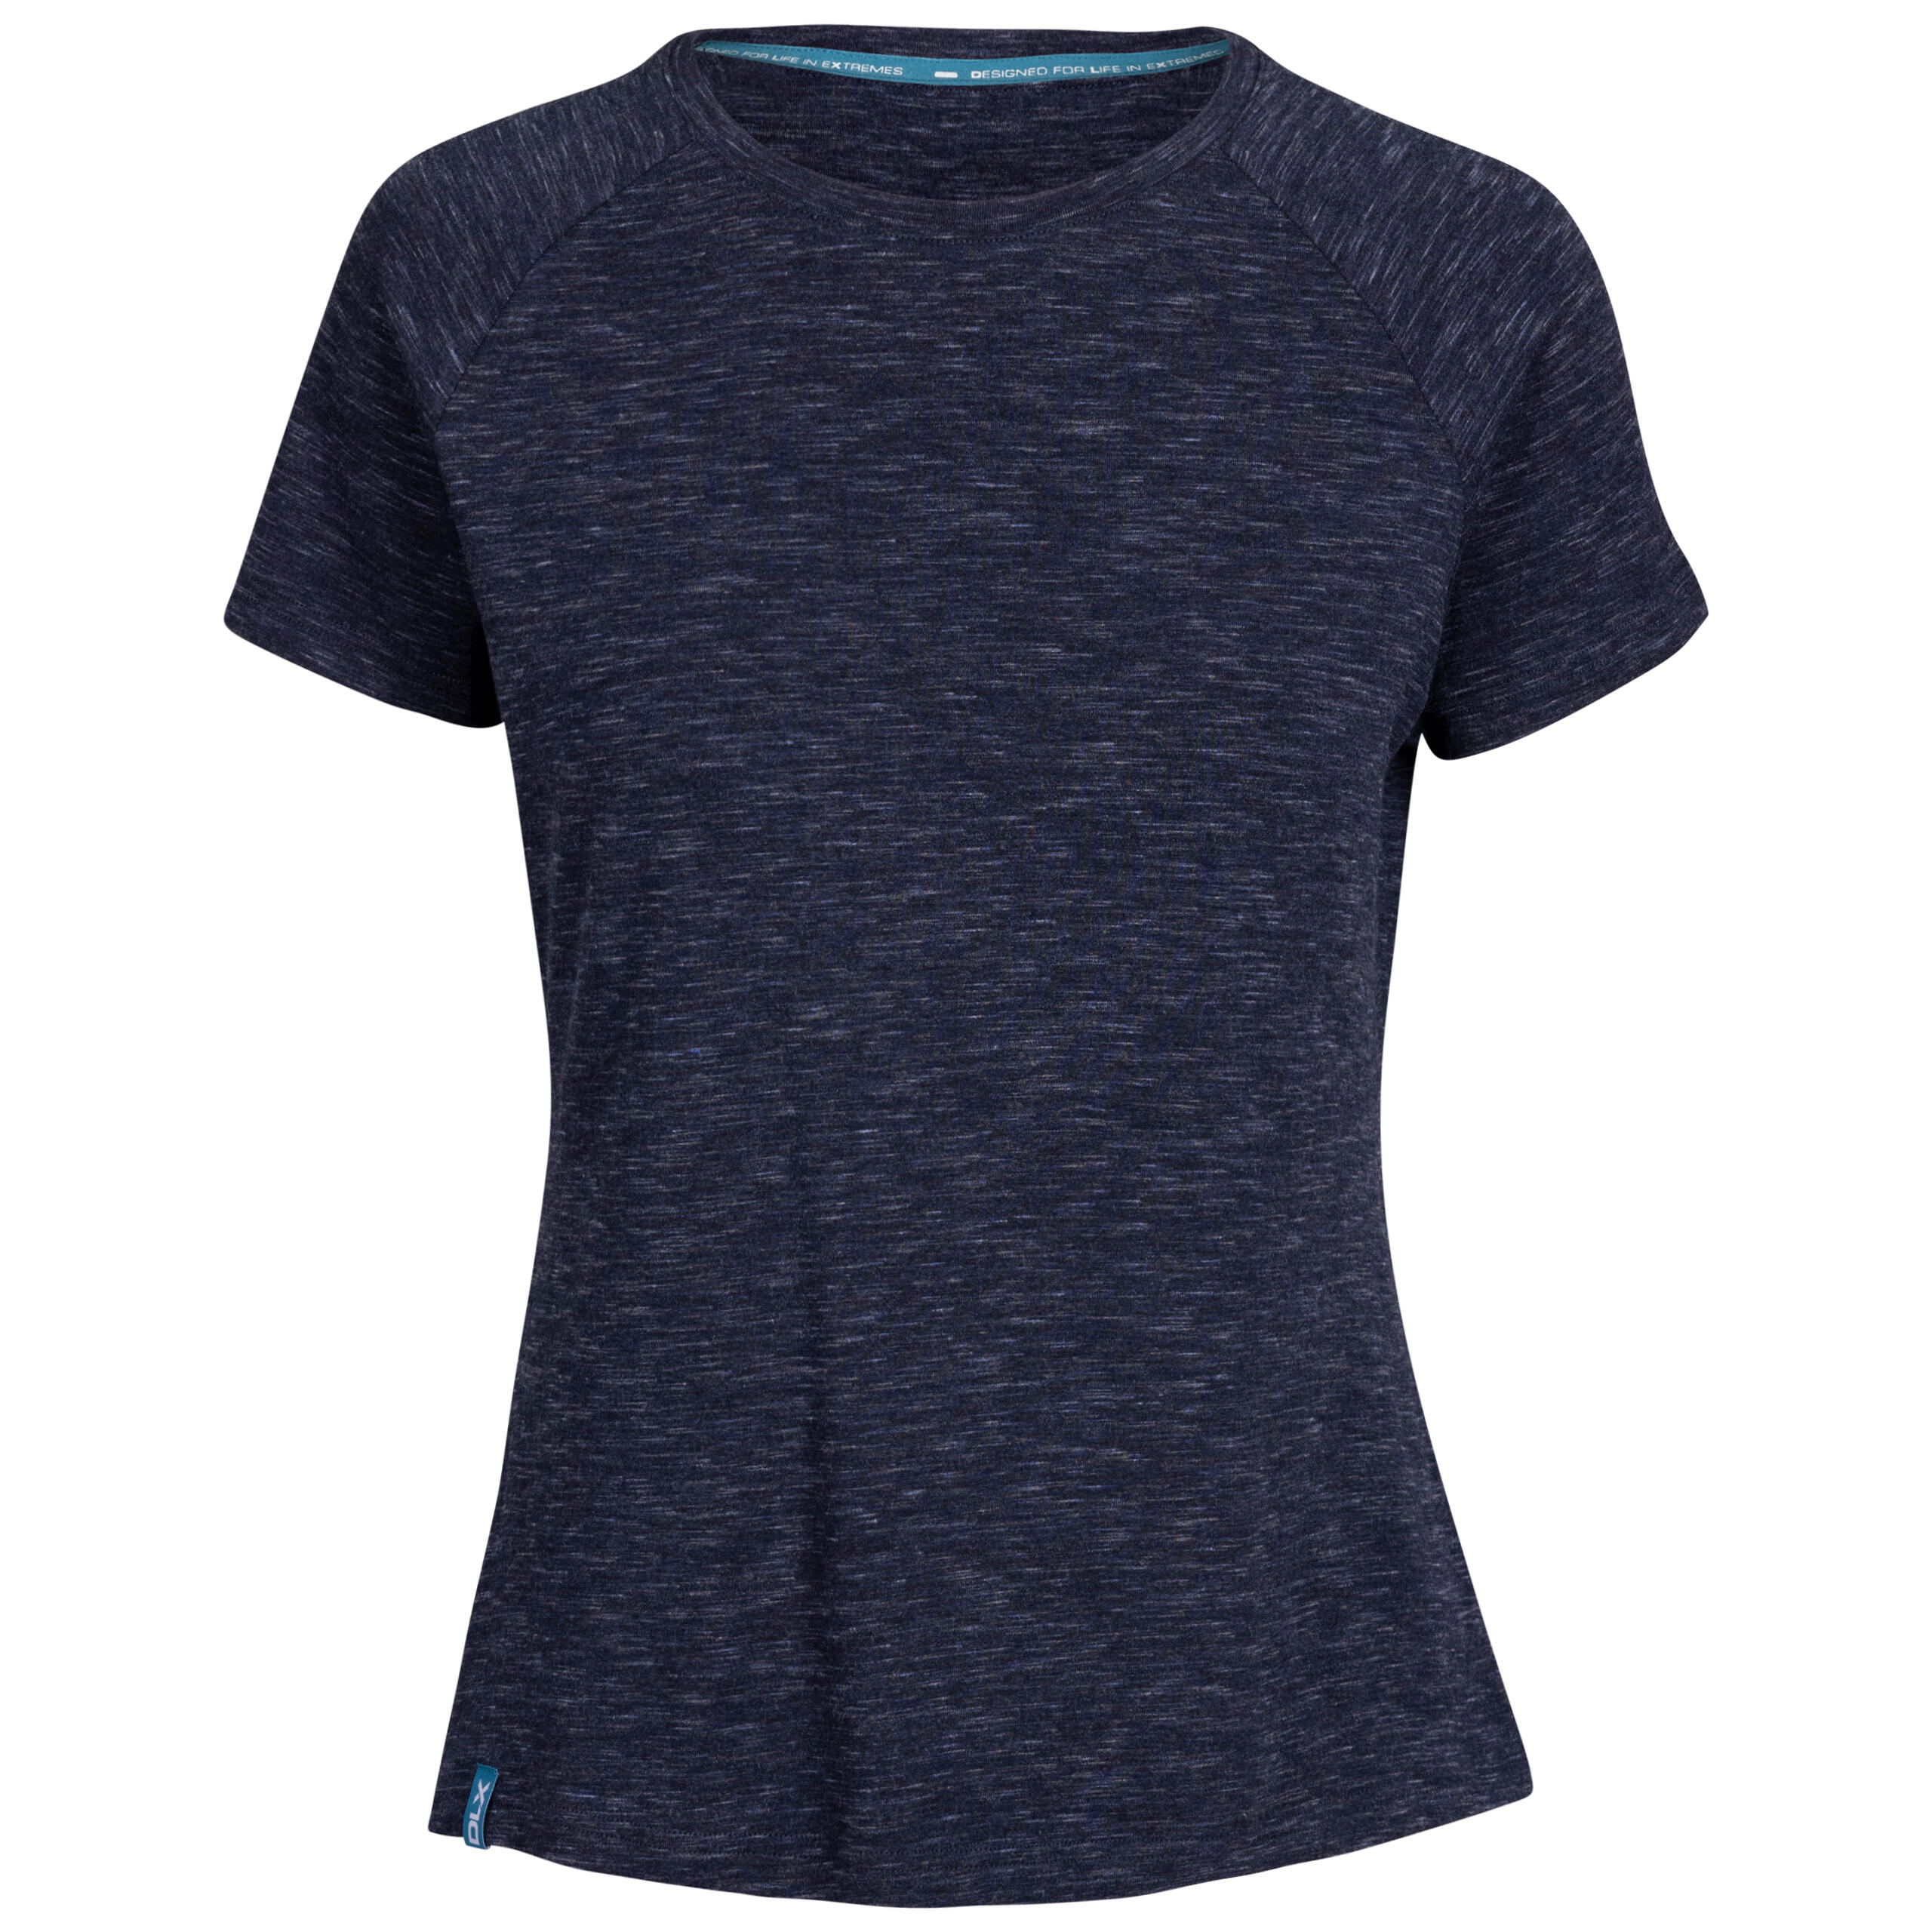 Womens Raglan T-Shirt Short Sleeved Activewear Top Quick Dry Katie 1/2